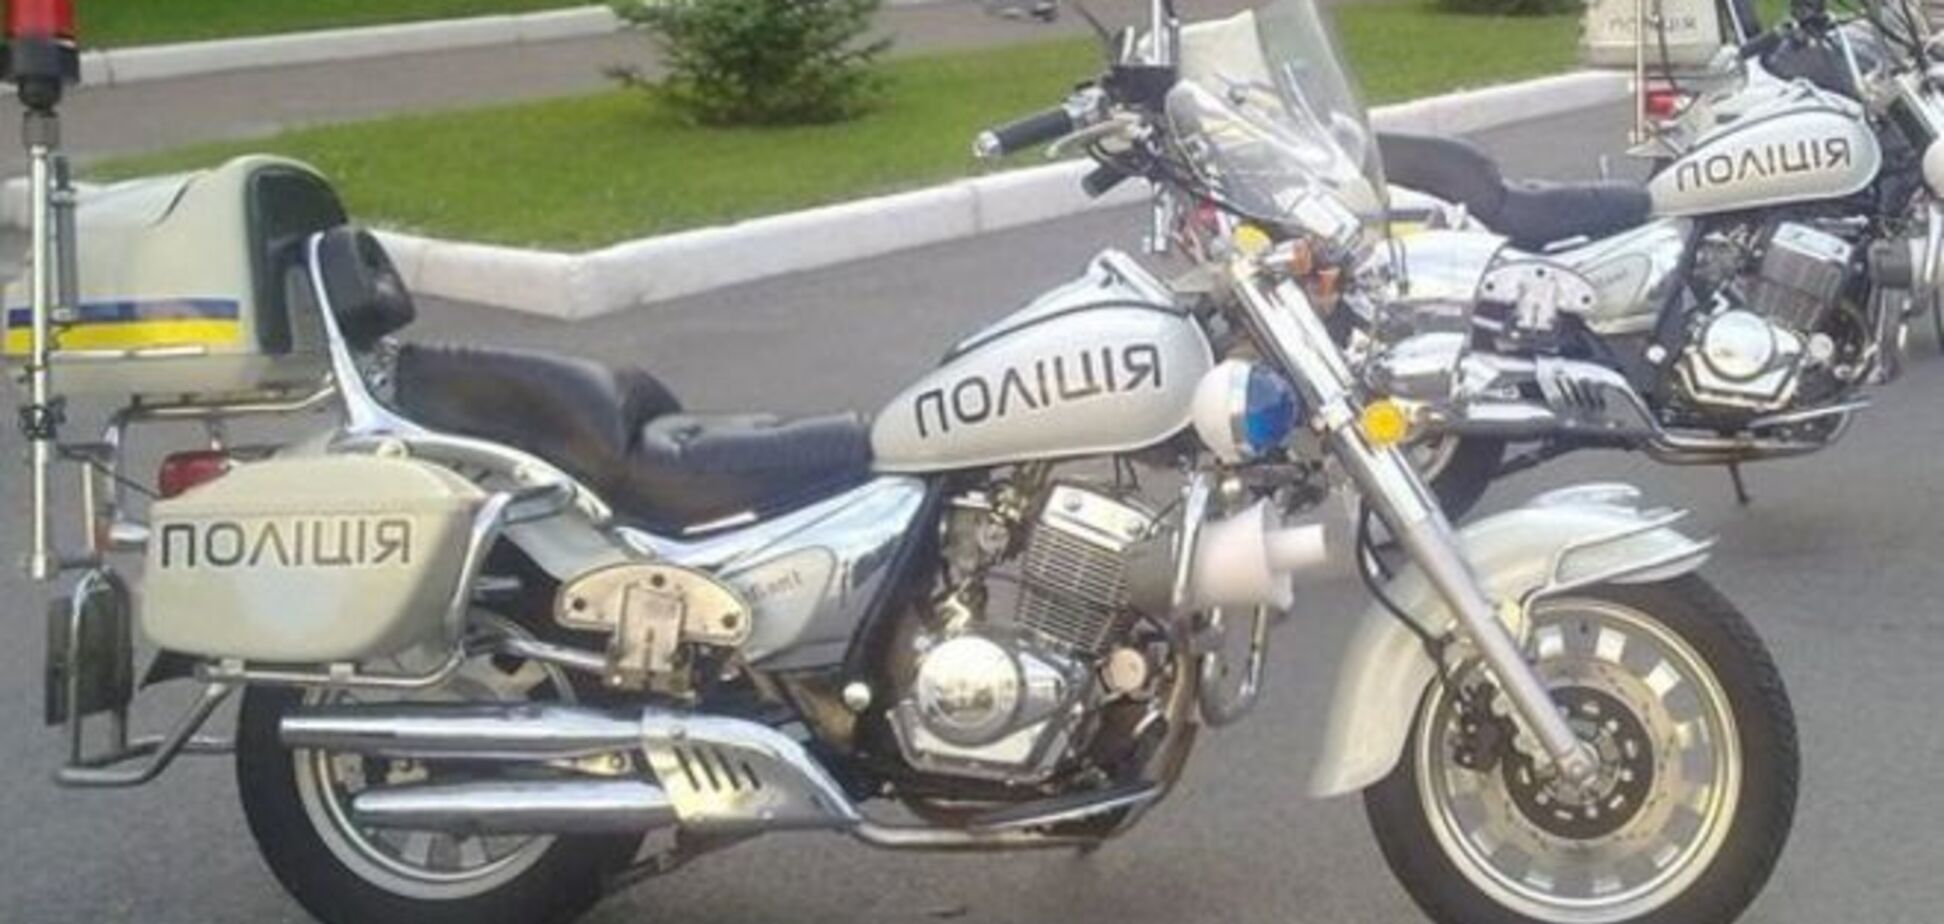 Закон на двух колесах: киевская полиция показала свои мотоциклы